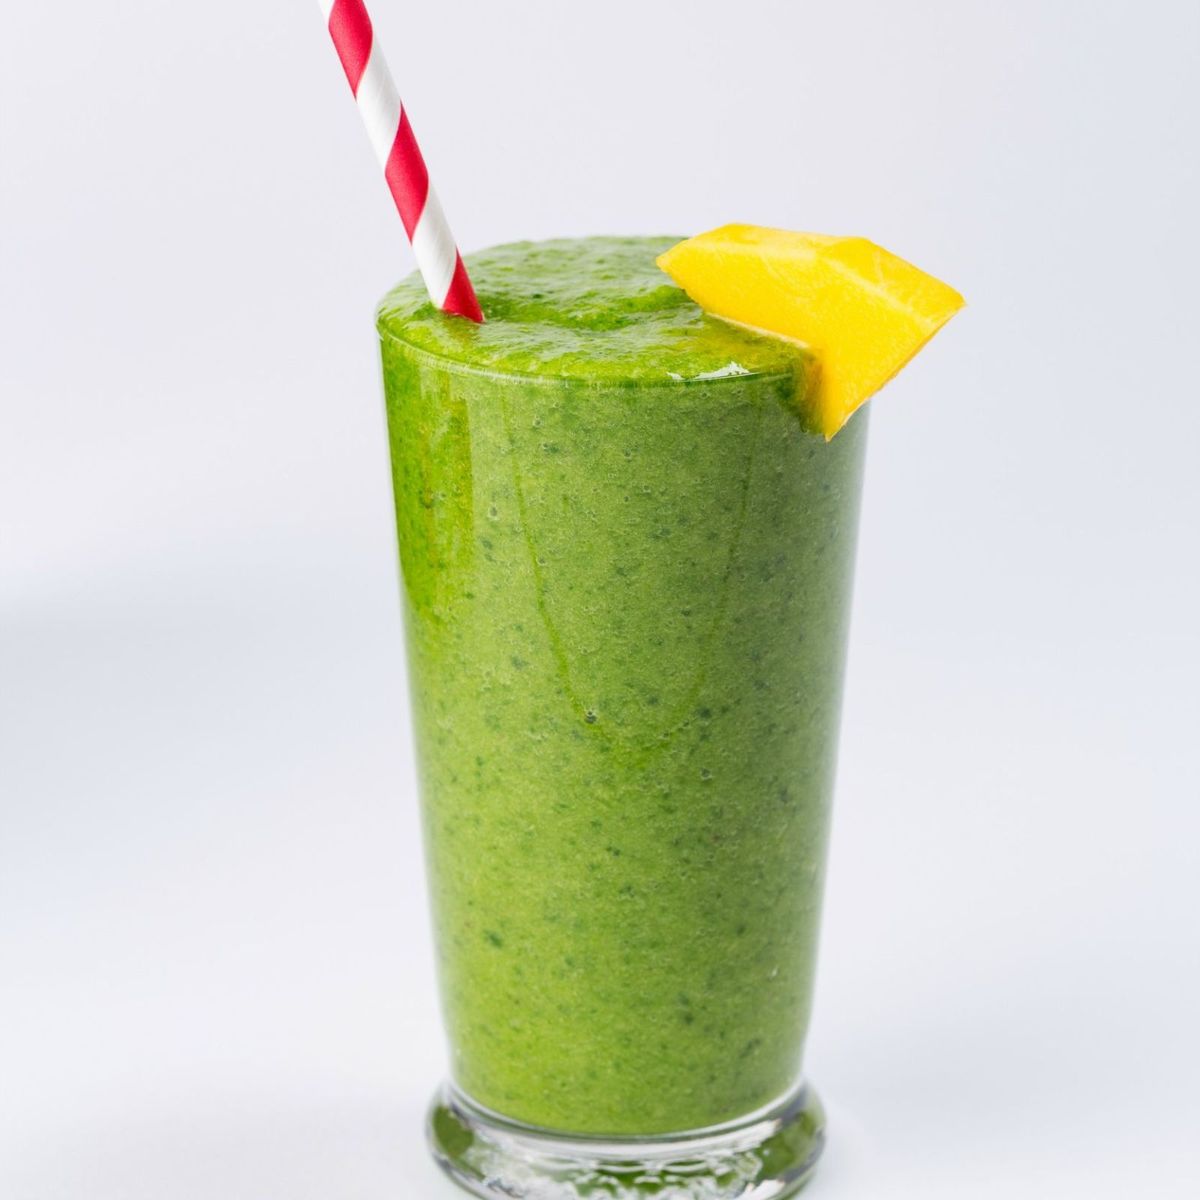 Green Machine Smoothie {Great Tasting Beverage}